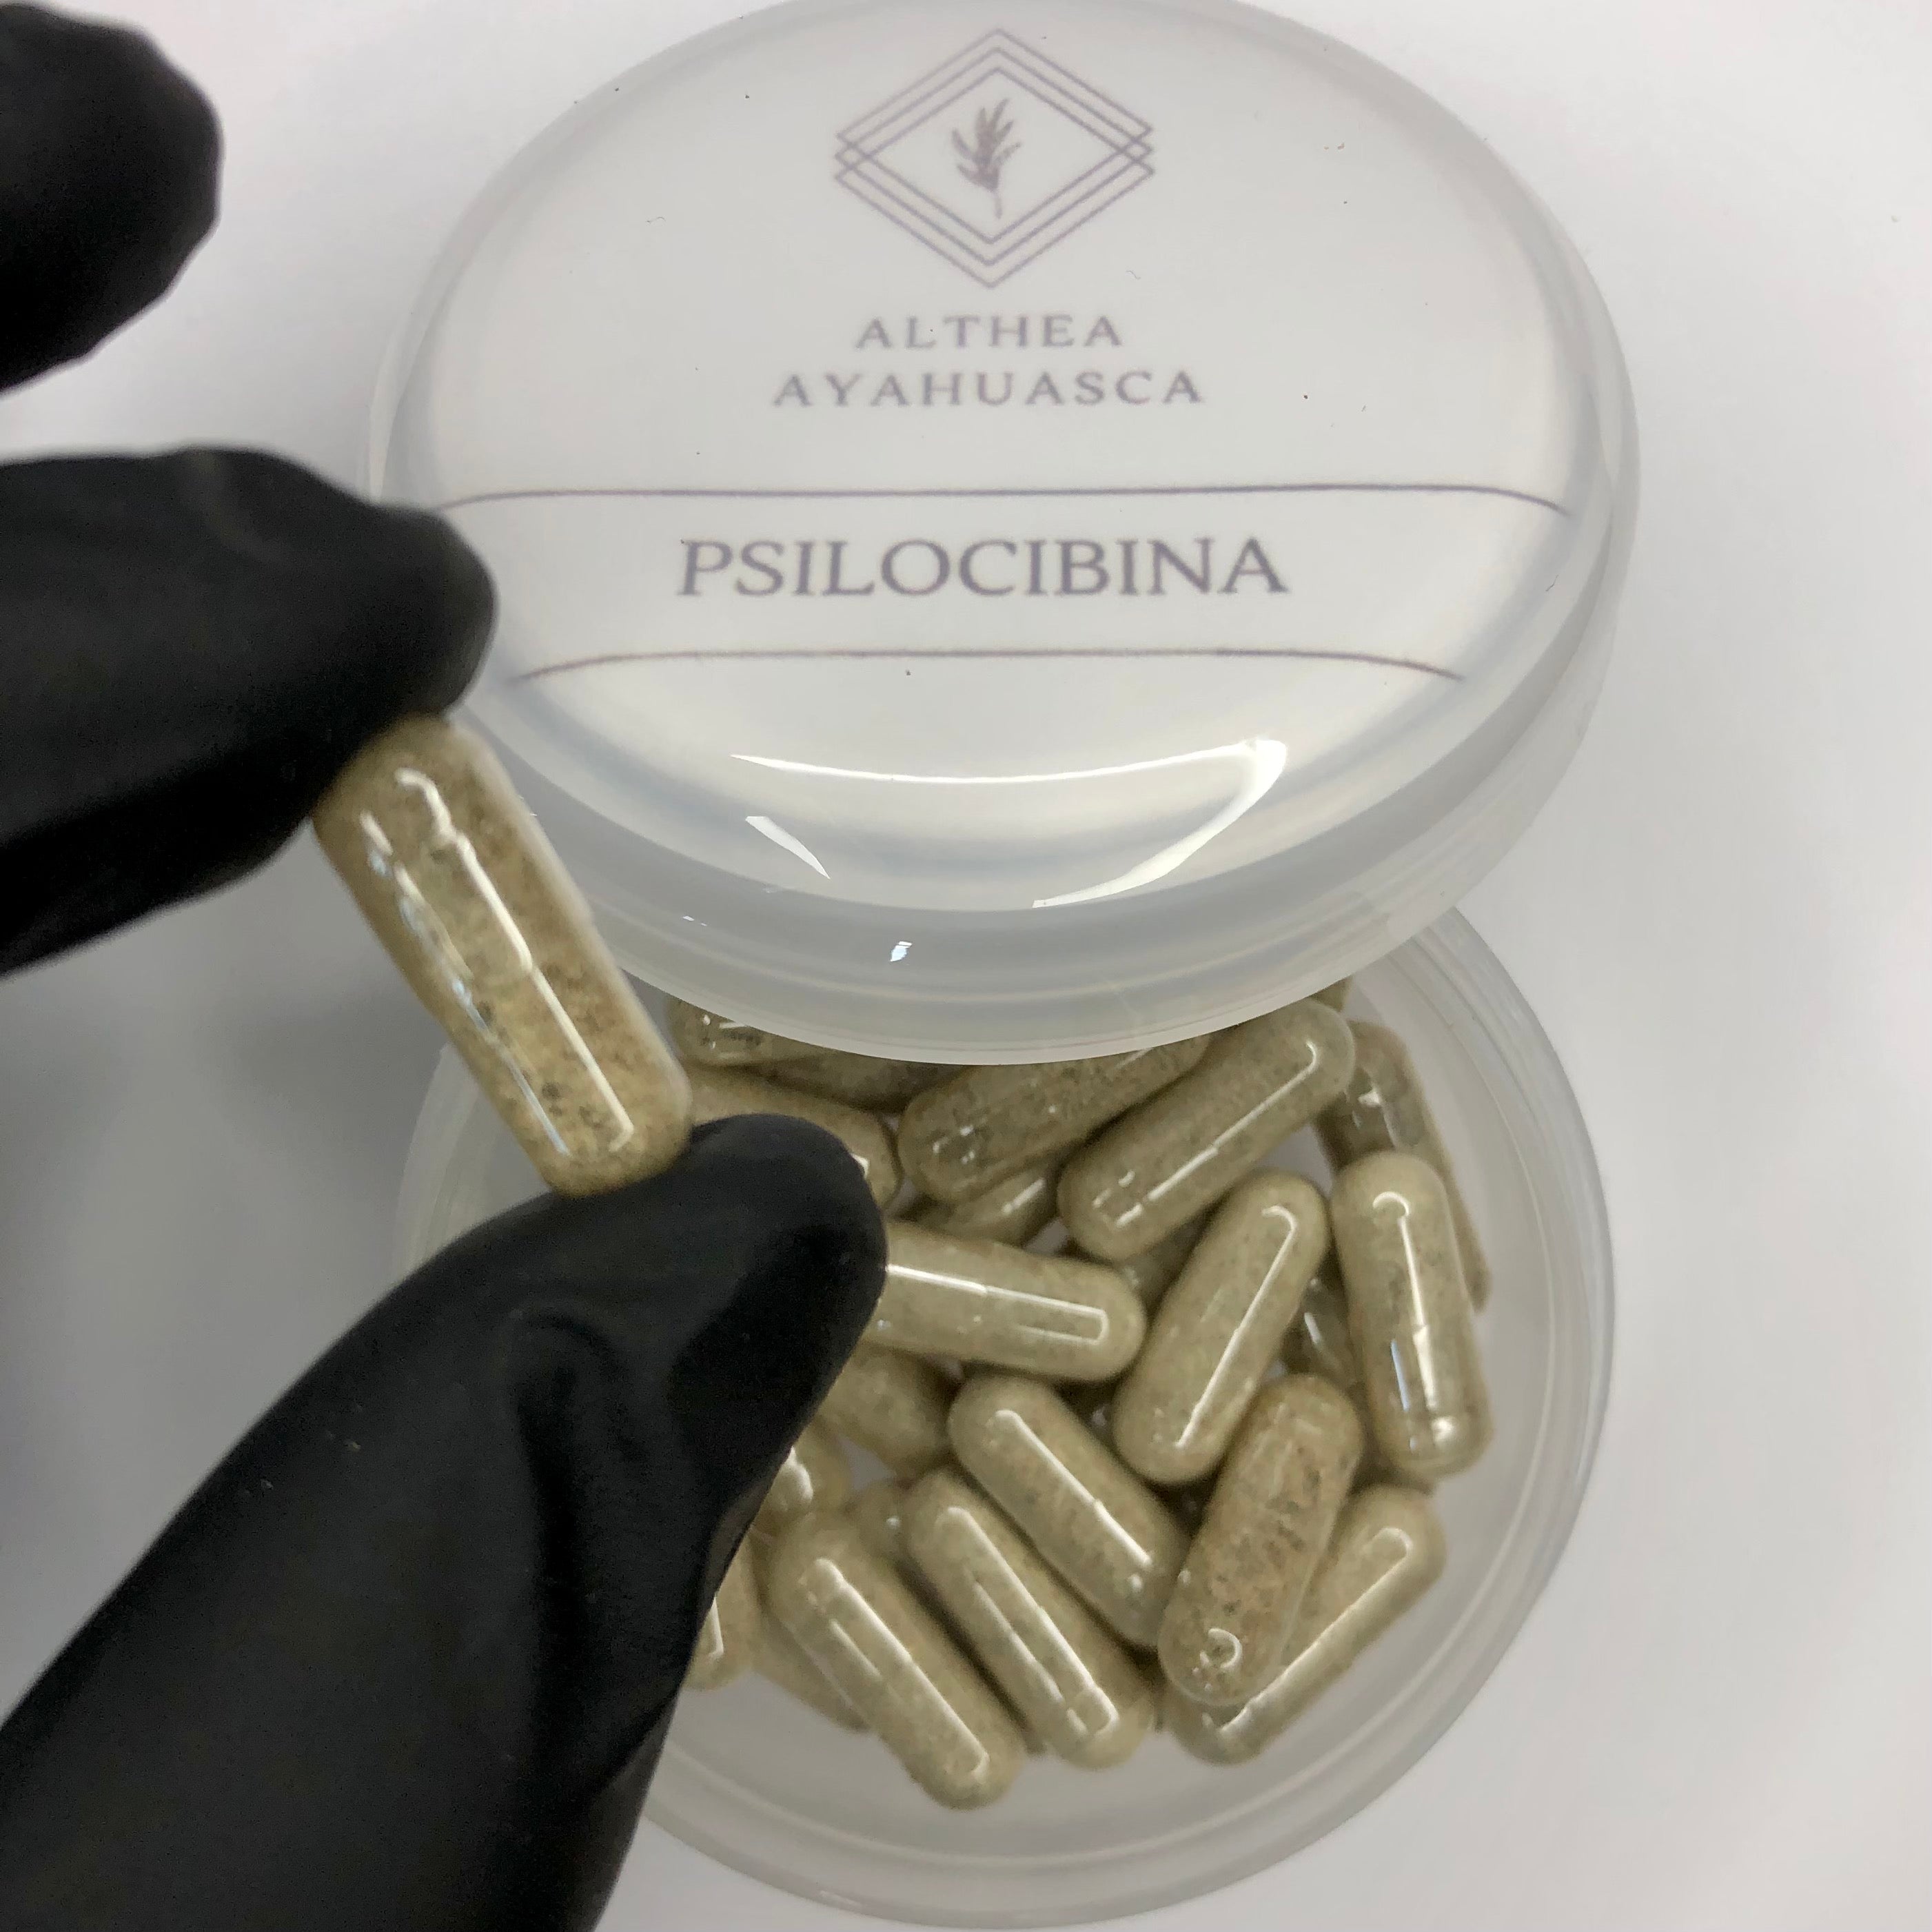 Microdosis de Psilocibina - Tratamiento para ansiedad, depresión y adicciones (30 días).